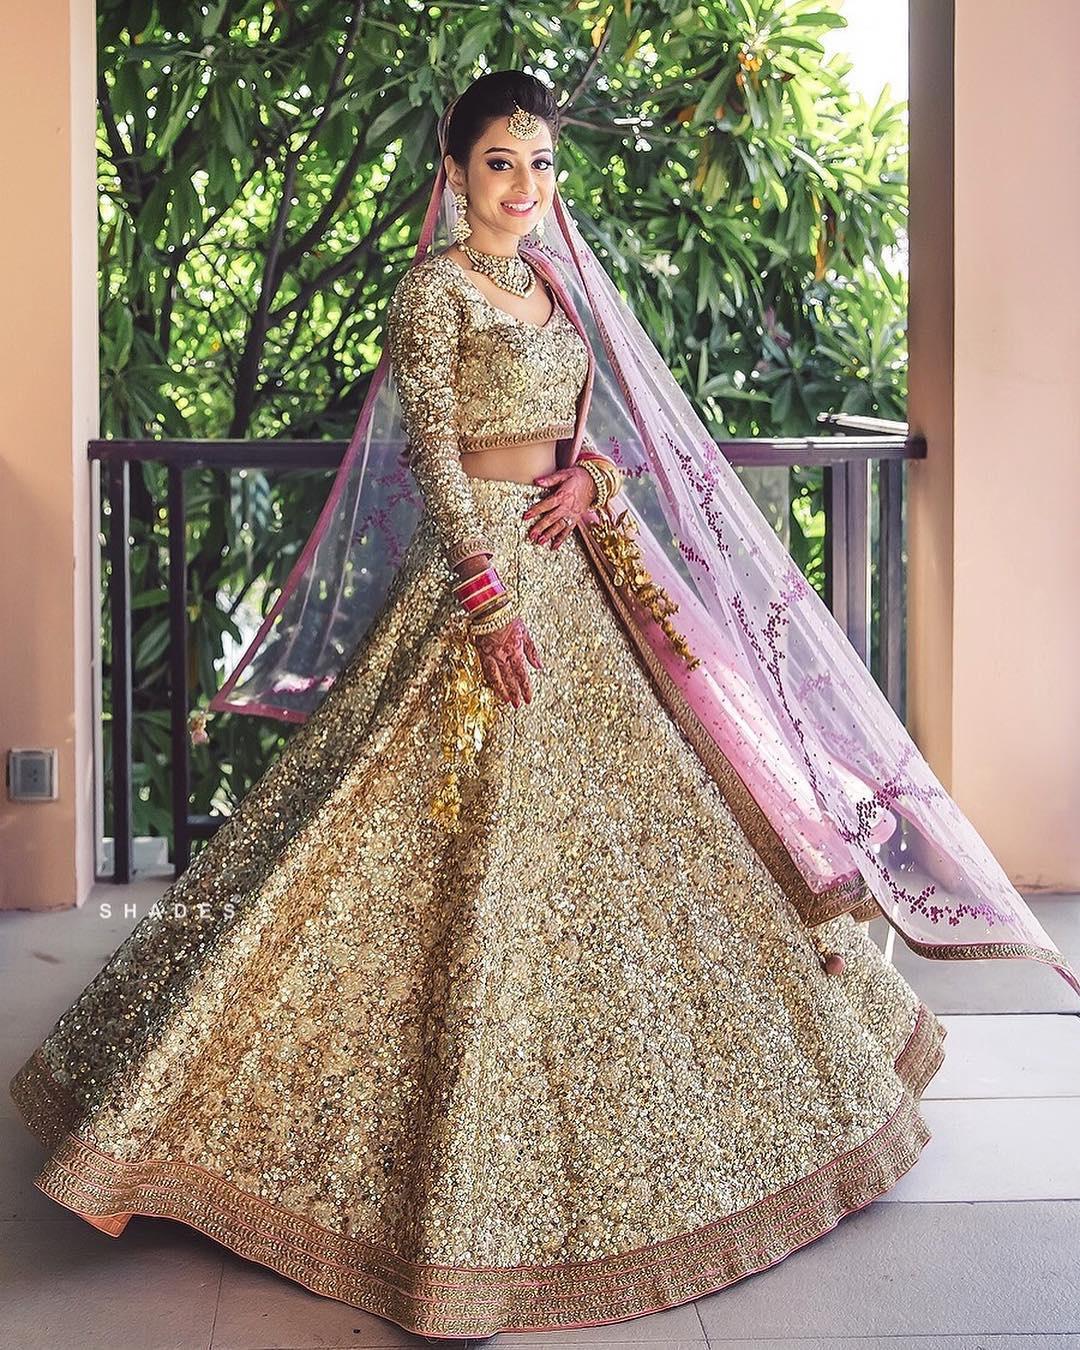 6 Indian Wedding Dresses For Bride | Indian Bride Dress